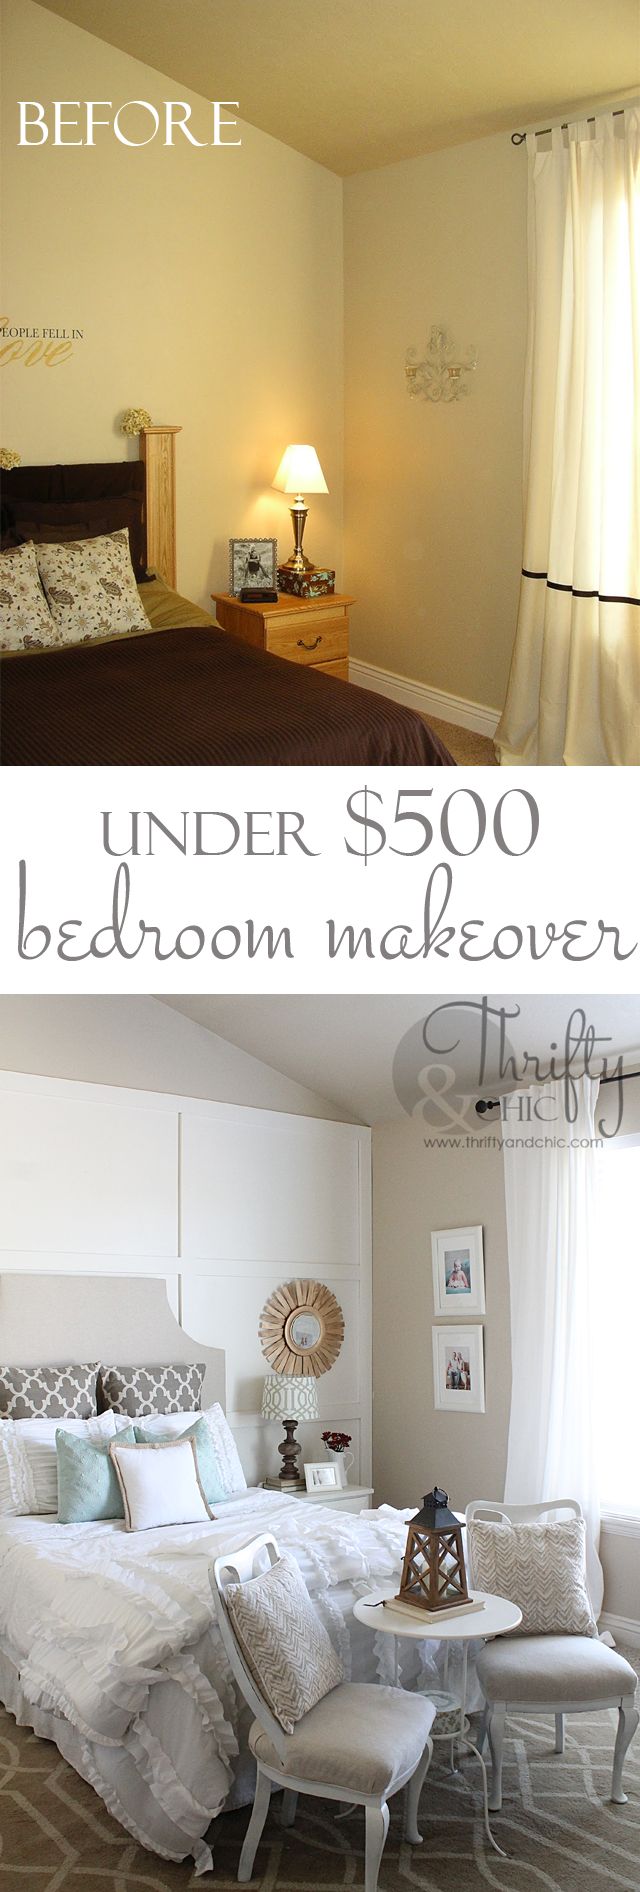 Furniture - Bedrooms : Master bedroom makeover for under $500. Great